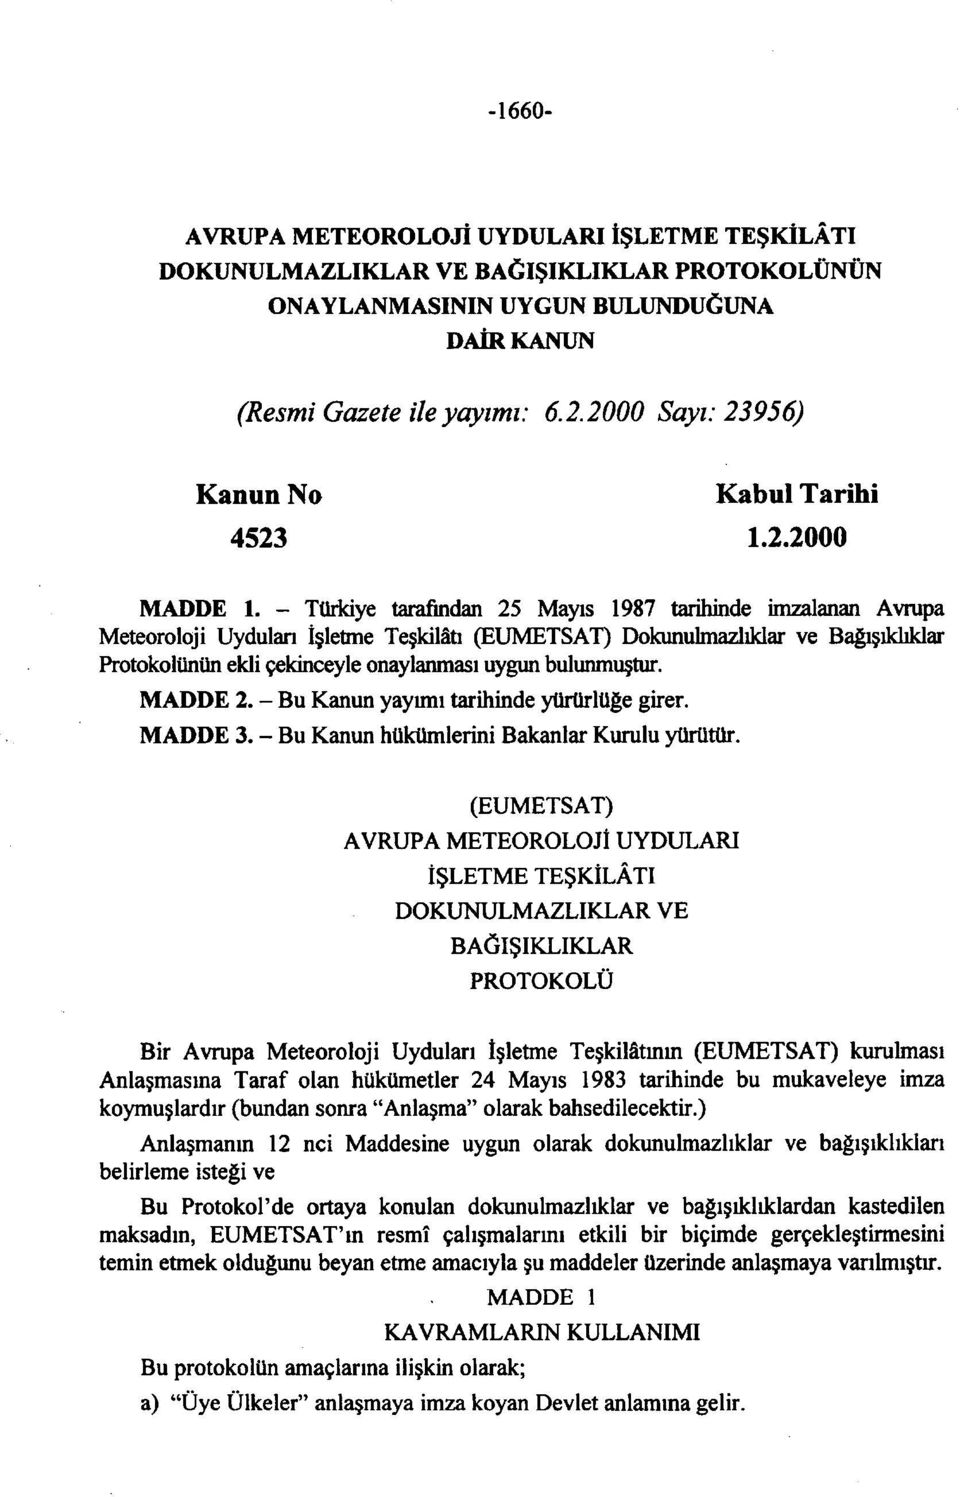 - Türkiye tarafından 25 Mayıs 1987 tarihinde imzalanan Avrupa Meteoroloji Uyduları İşletme Teşkilâtı (EUMETSAT) Dokunulmazlıklar ve Bağışıklıklar Protokolünün ekli çekinceyle onaylanması uygun